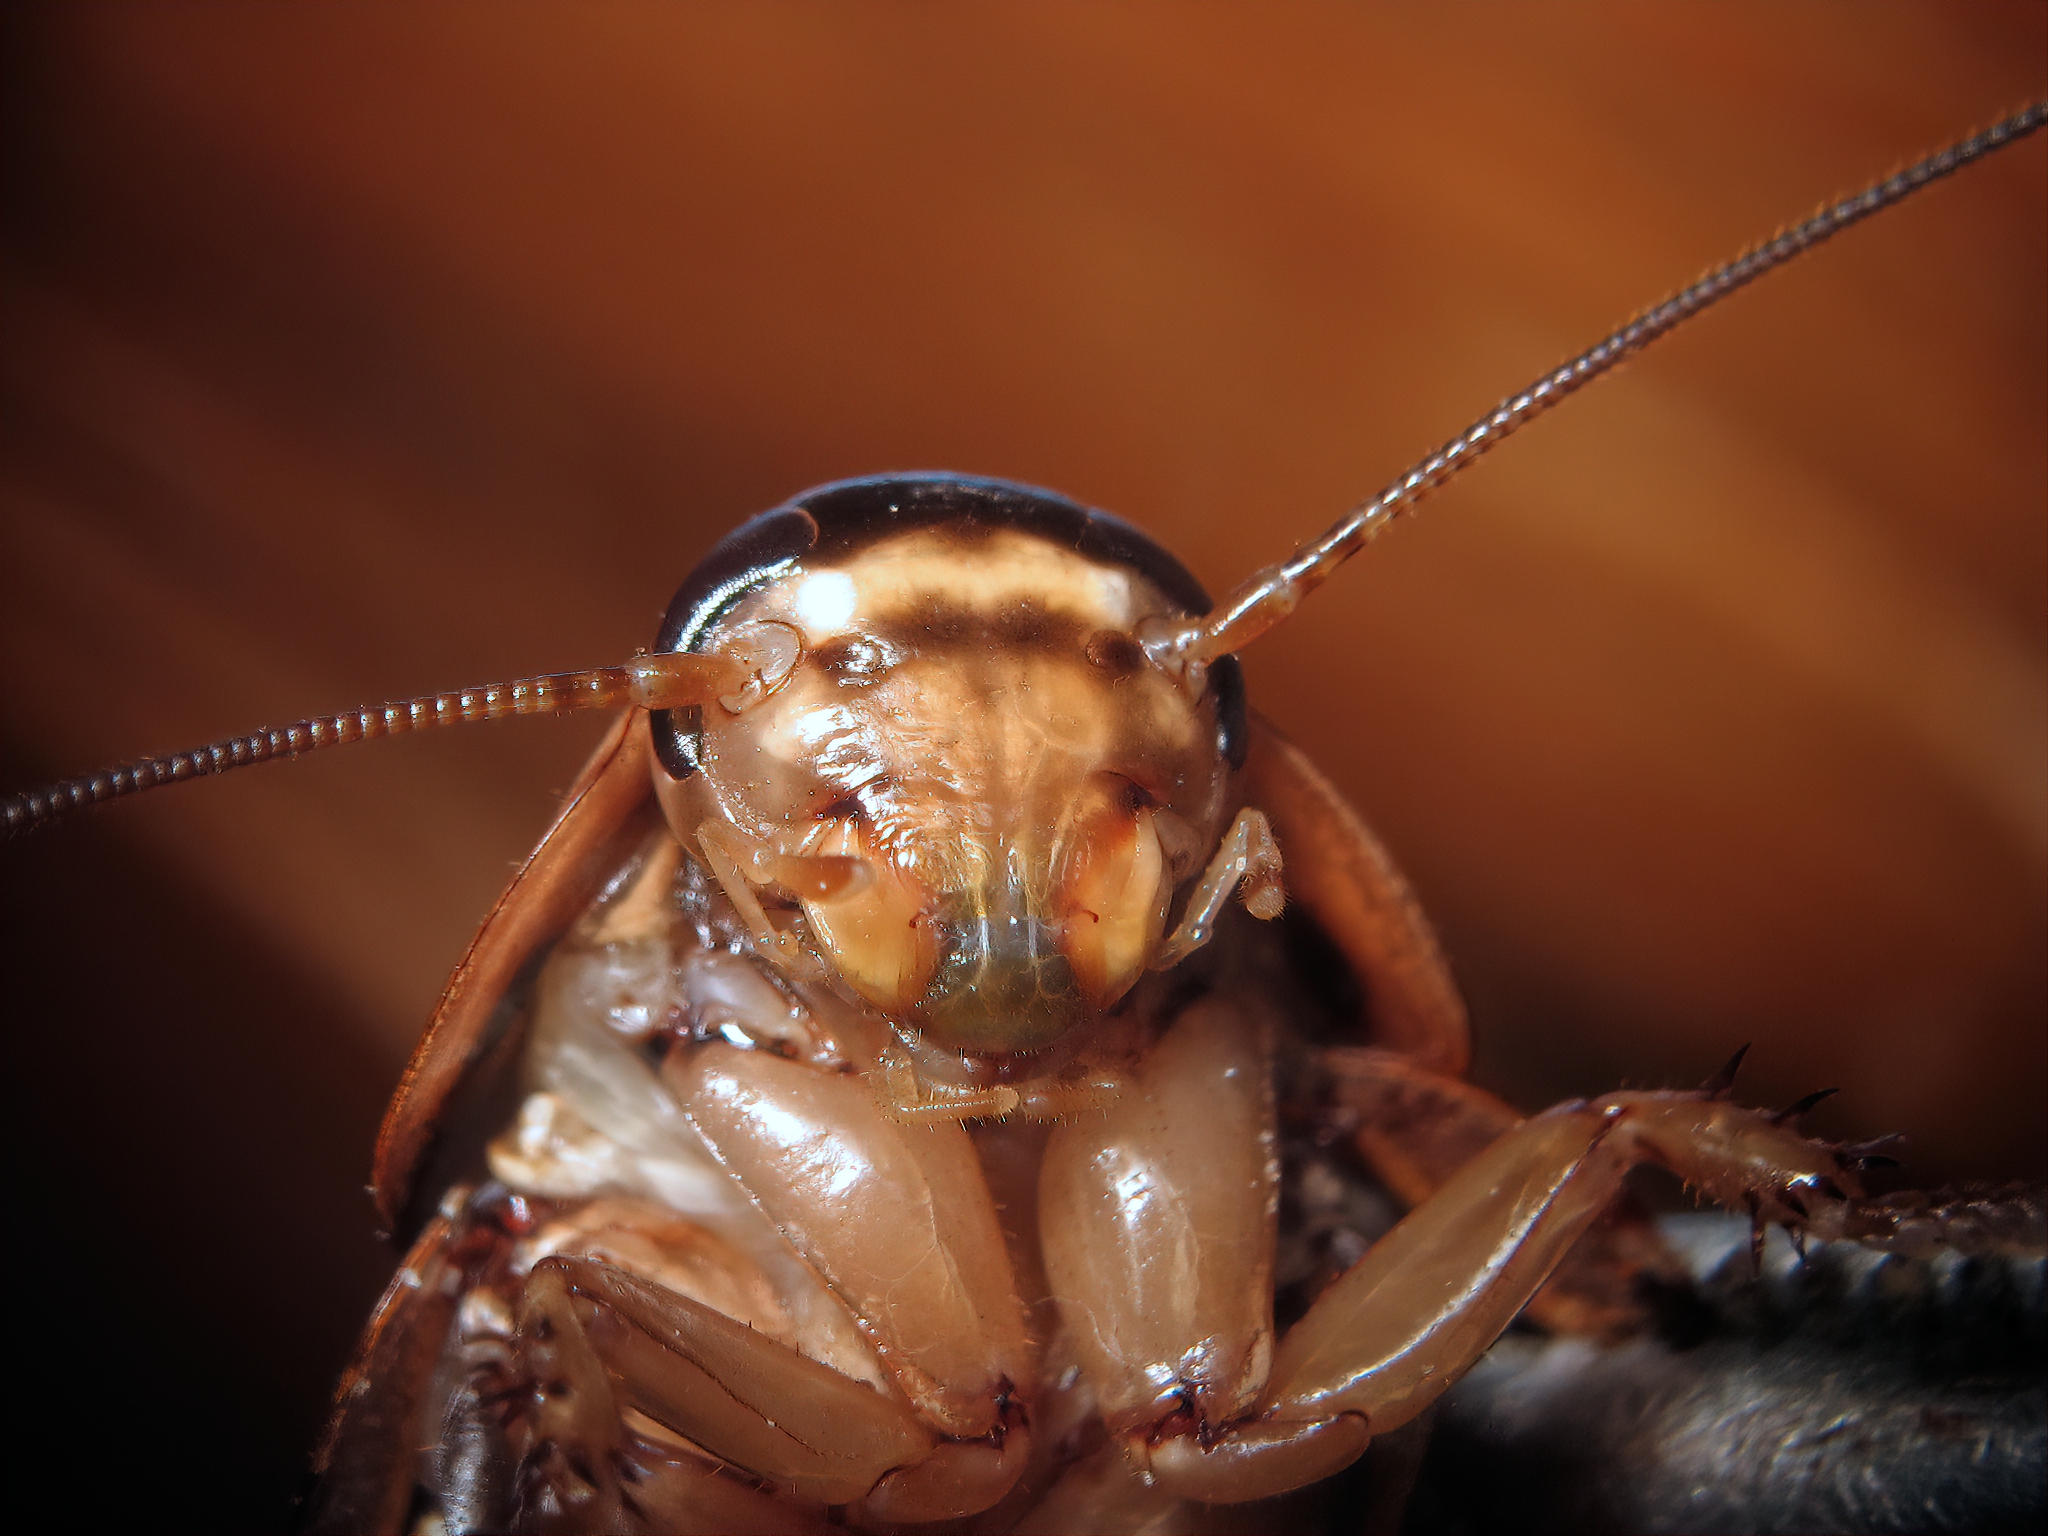 Las cucarachas son portadoras de varias enfermedades (Getty Images)